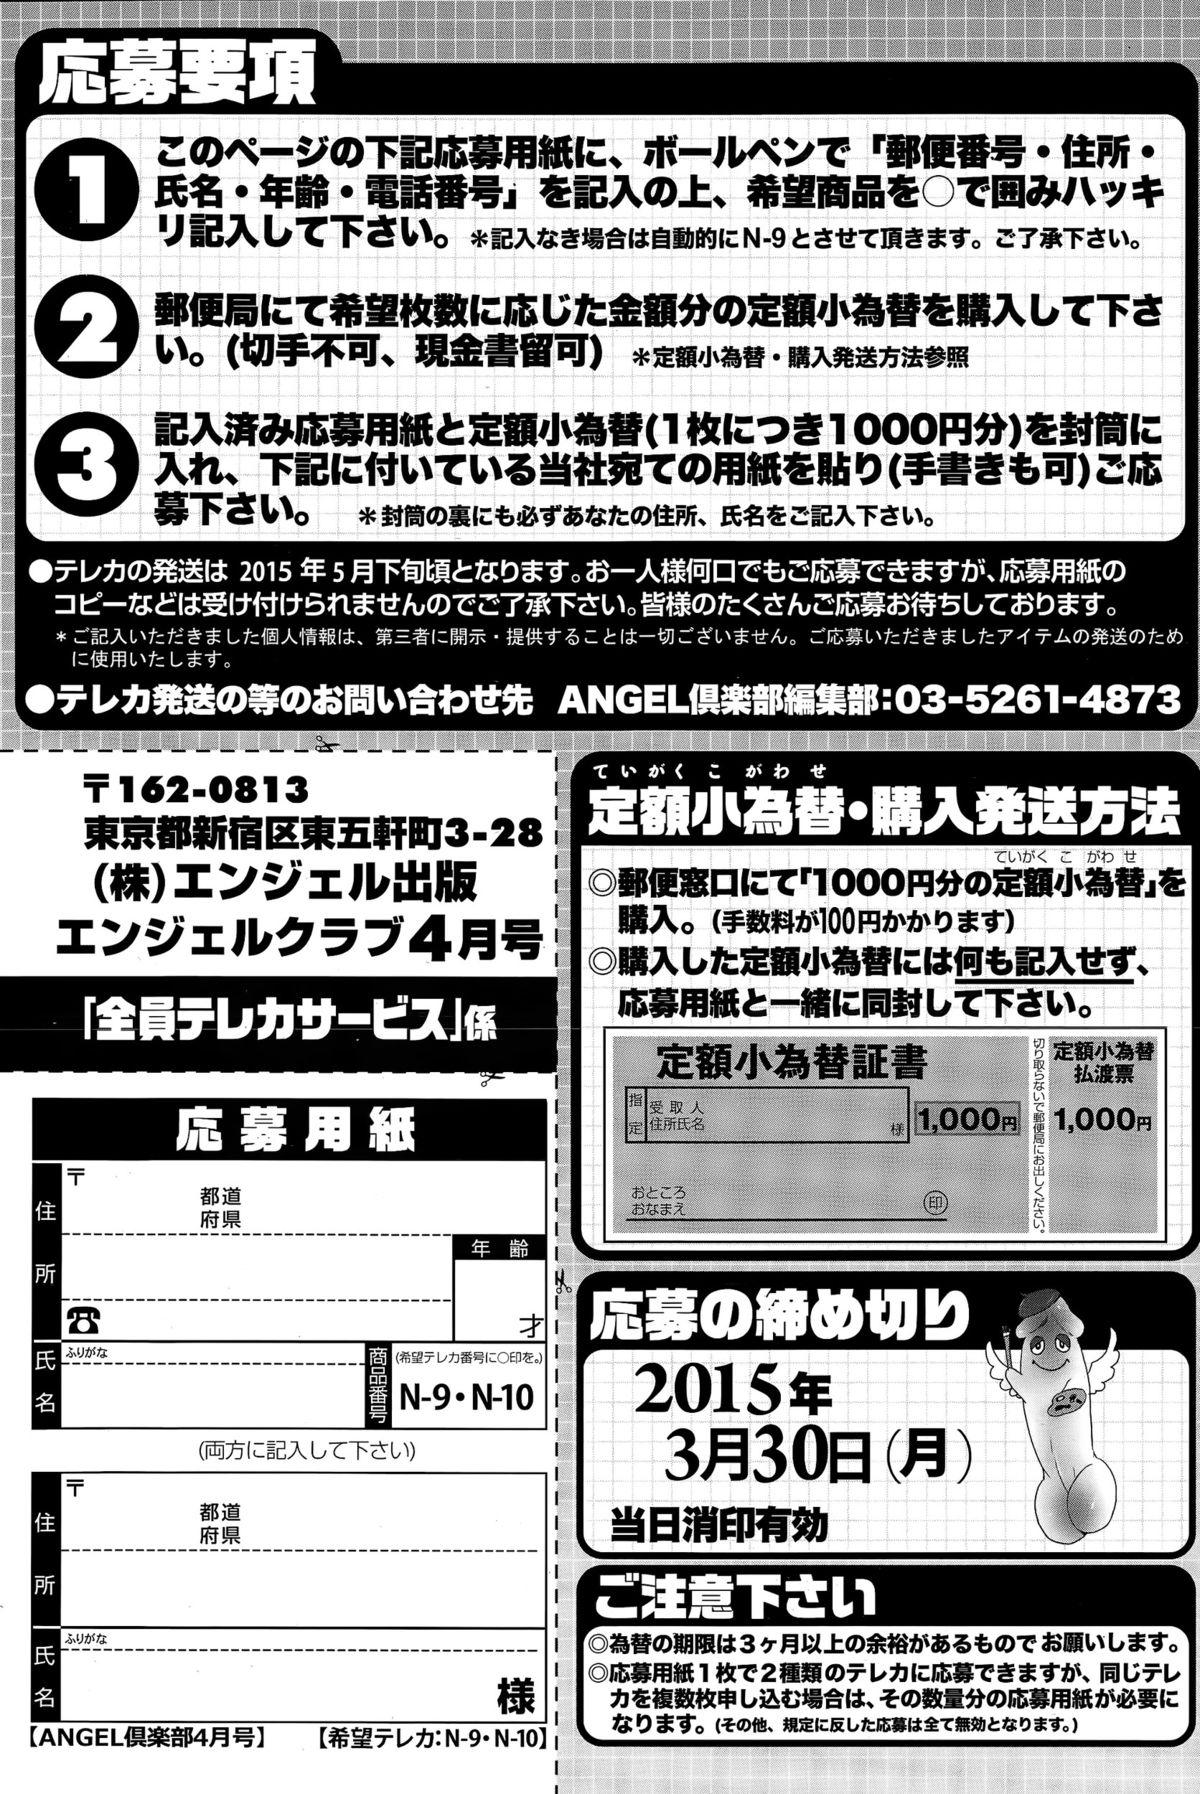 ANGEL Club 2015-04 206